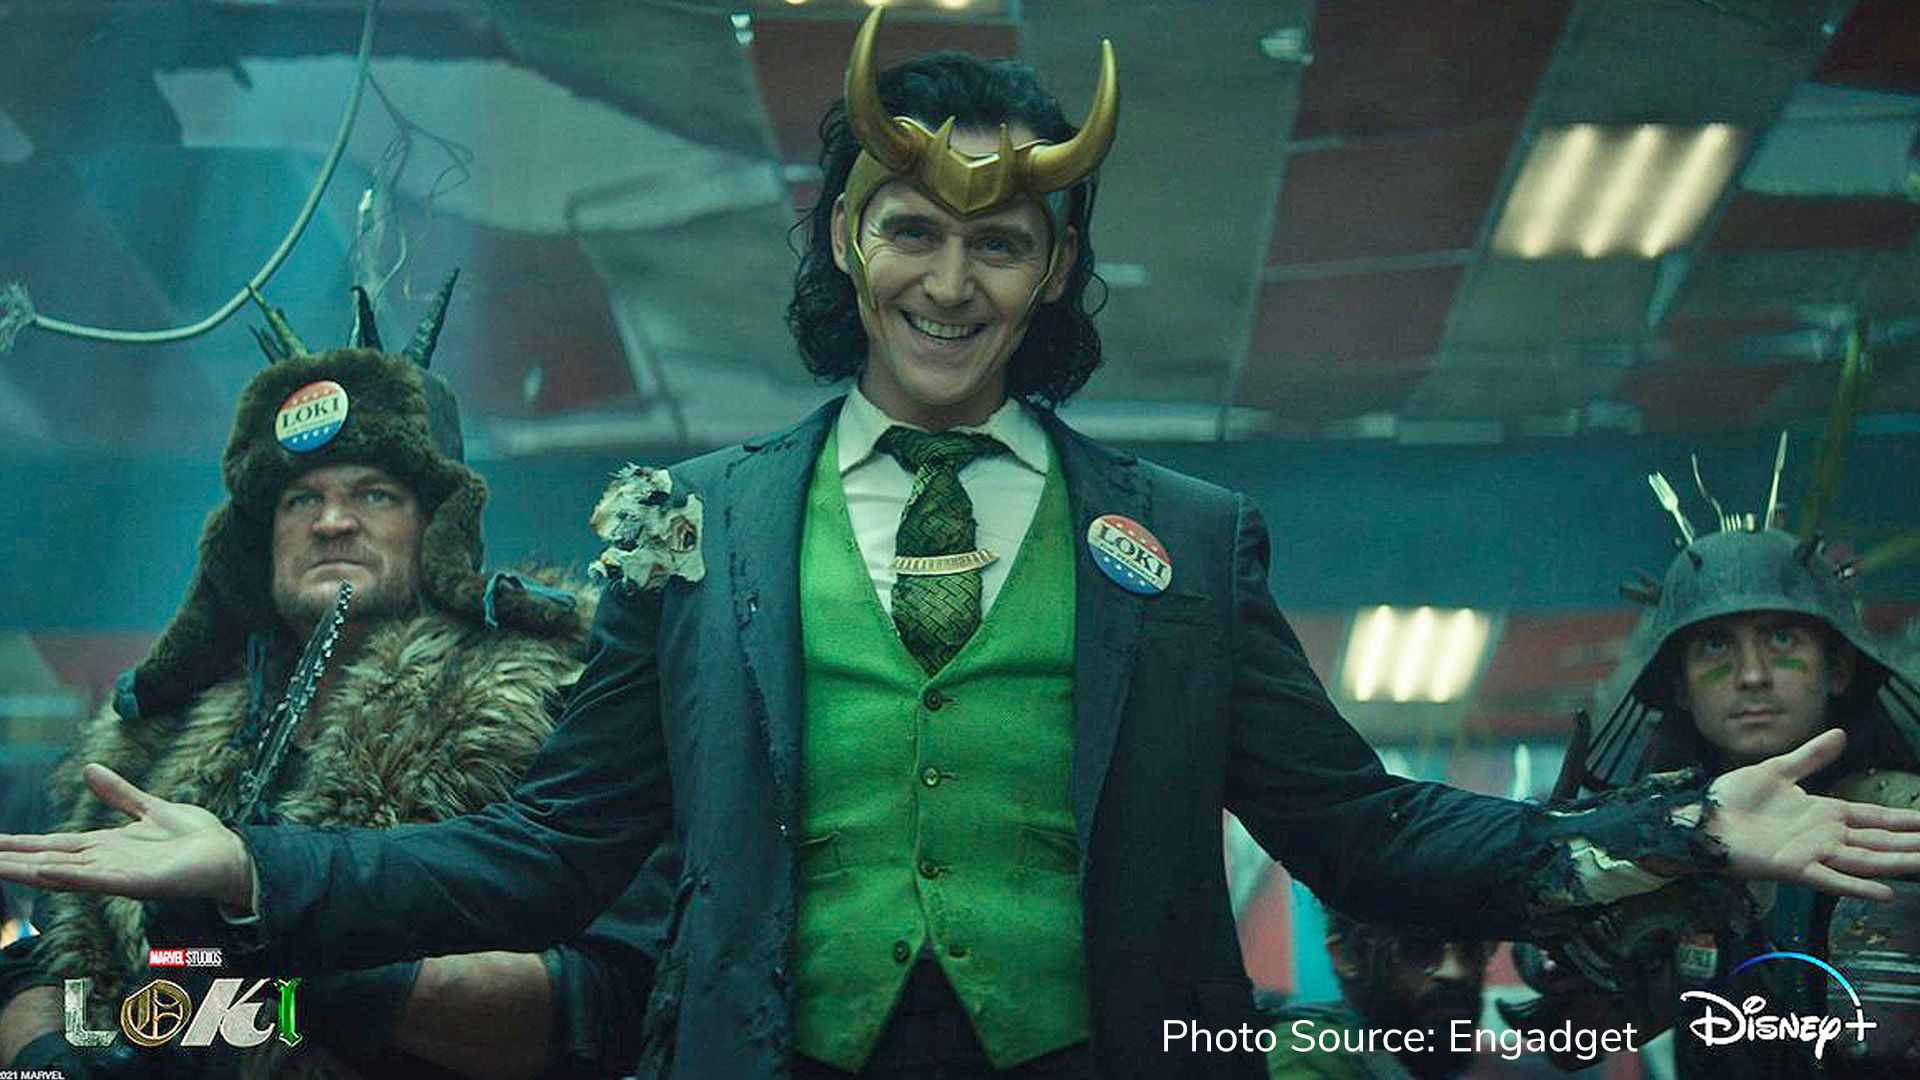 Marvel drops new trailer for Loki series